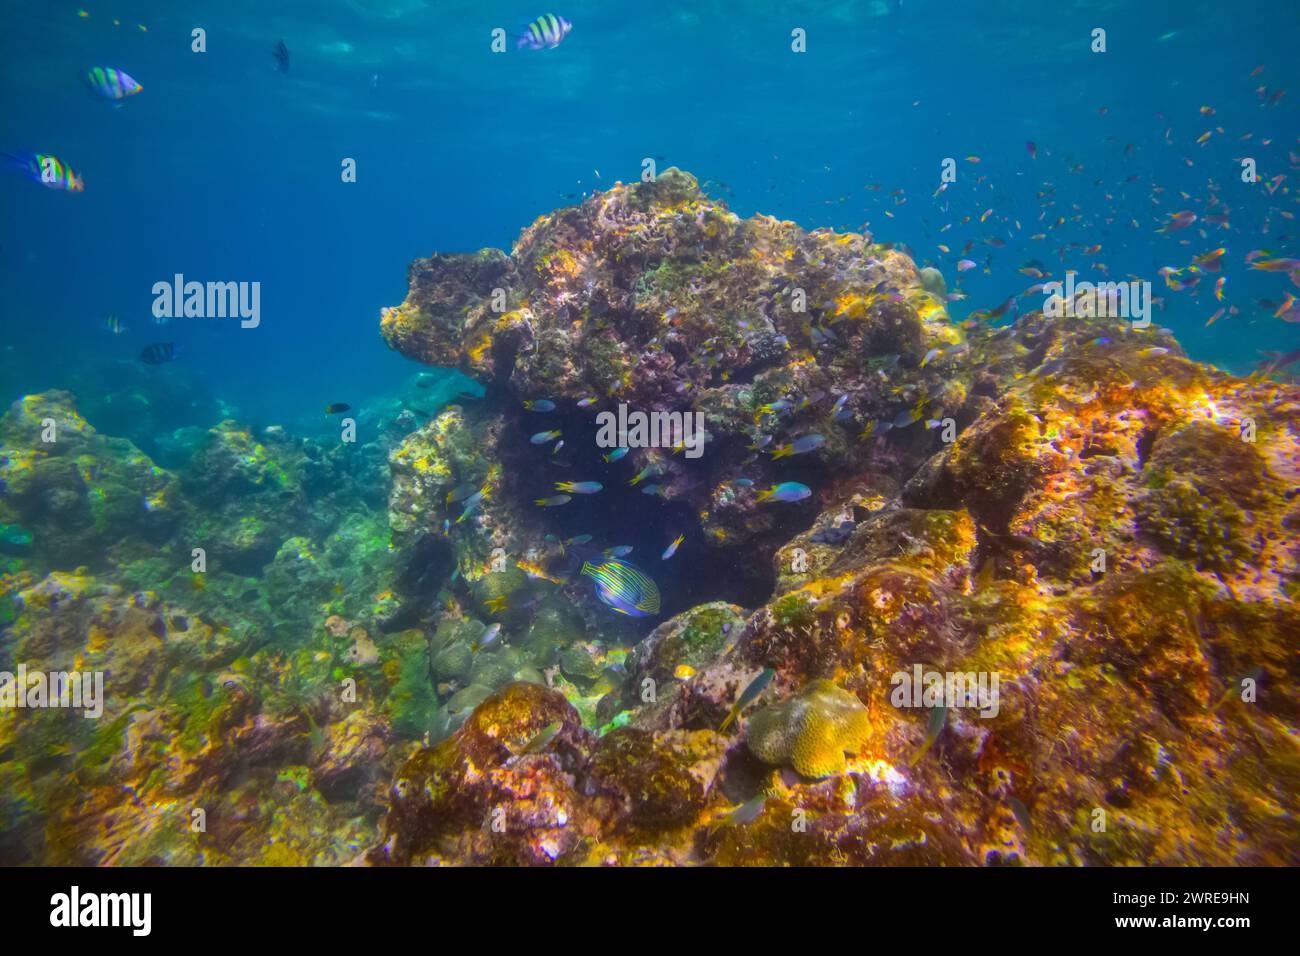 Vari pesci tropicali abudefduf si nutrono nelle calde acque di unser dell'oceano tra i coralli. Scuola di pappagalli che riproducono e nutrono acque poco profonde, shoa Foto Stock